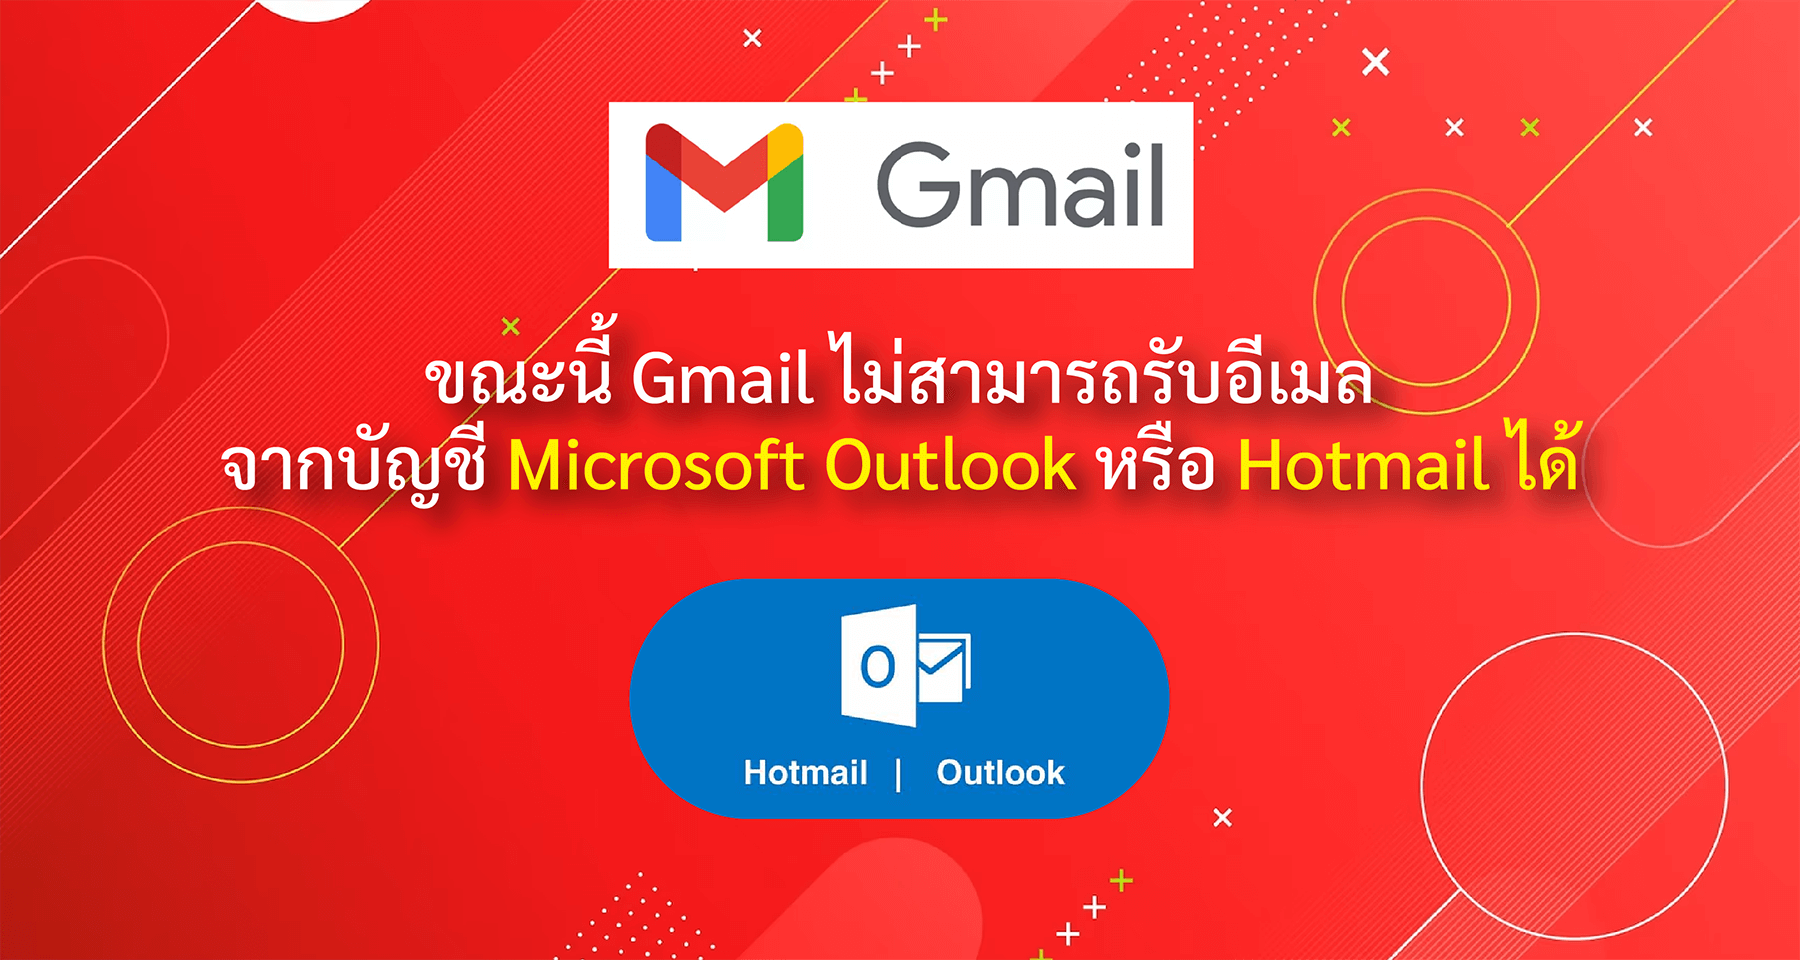 ขณะนี้ Gmail ไม่สามารถรับอีเมลจากบัญชี Microsoft Outlook หรือ Hotmail ได้ |  Blog | Mail Master | Email Hosting , อีเมล บริษัท , อีเมลธุรกิจ , Email ธุ